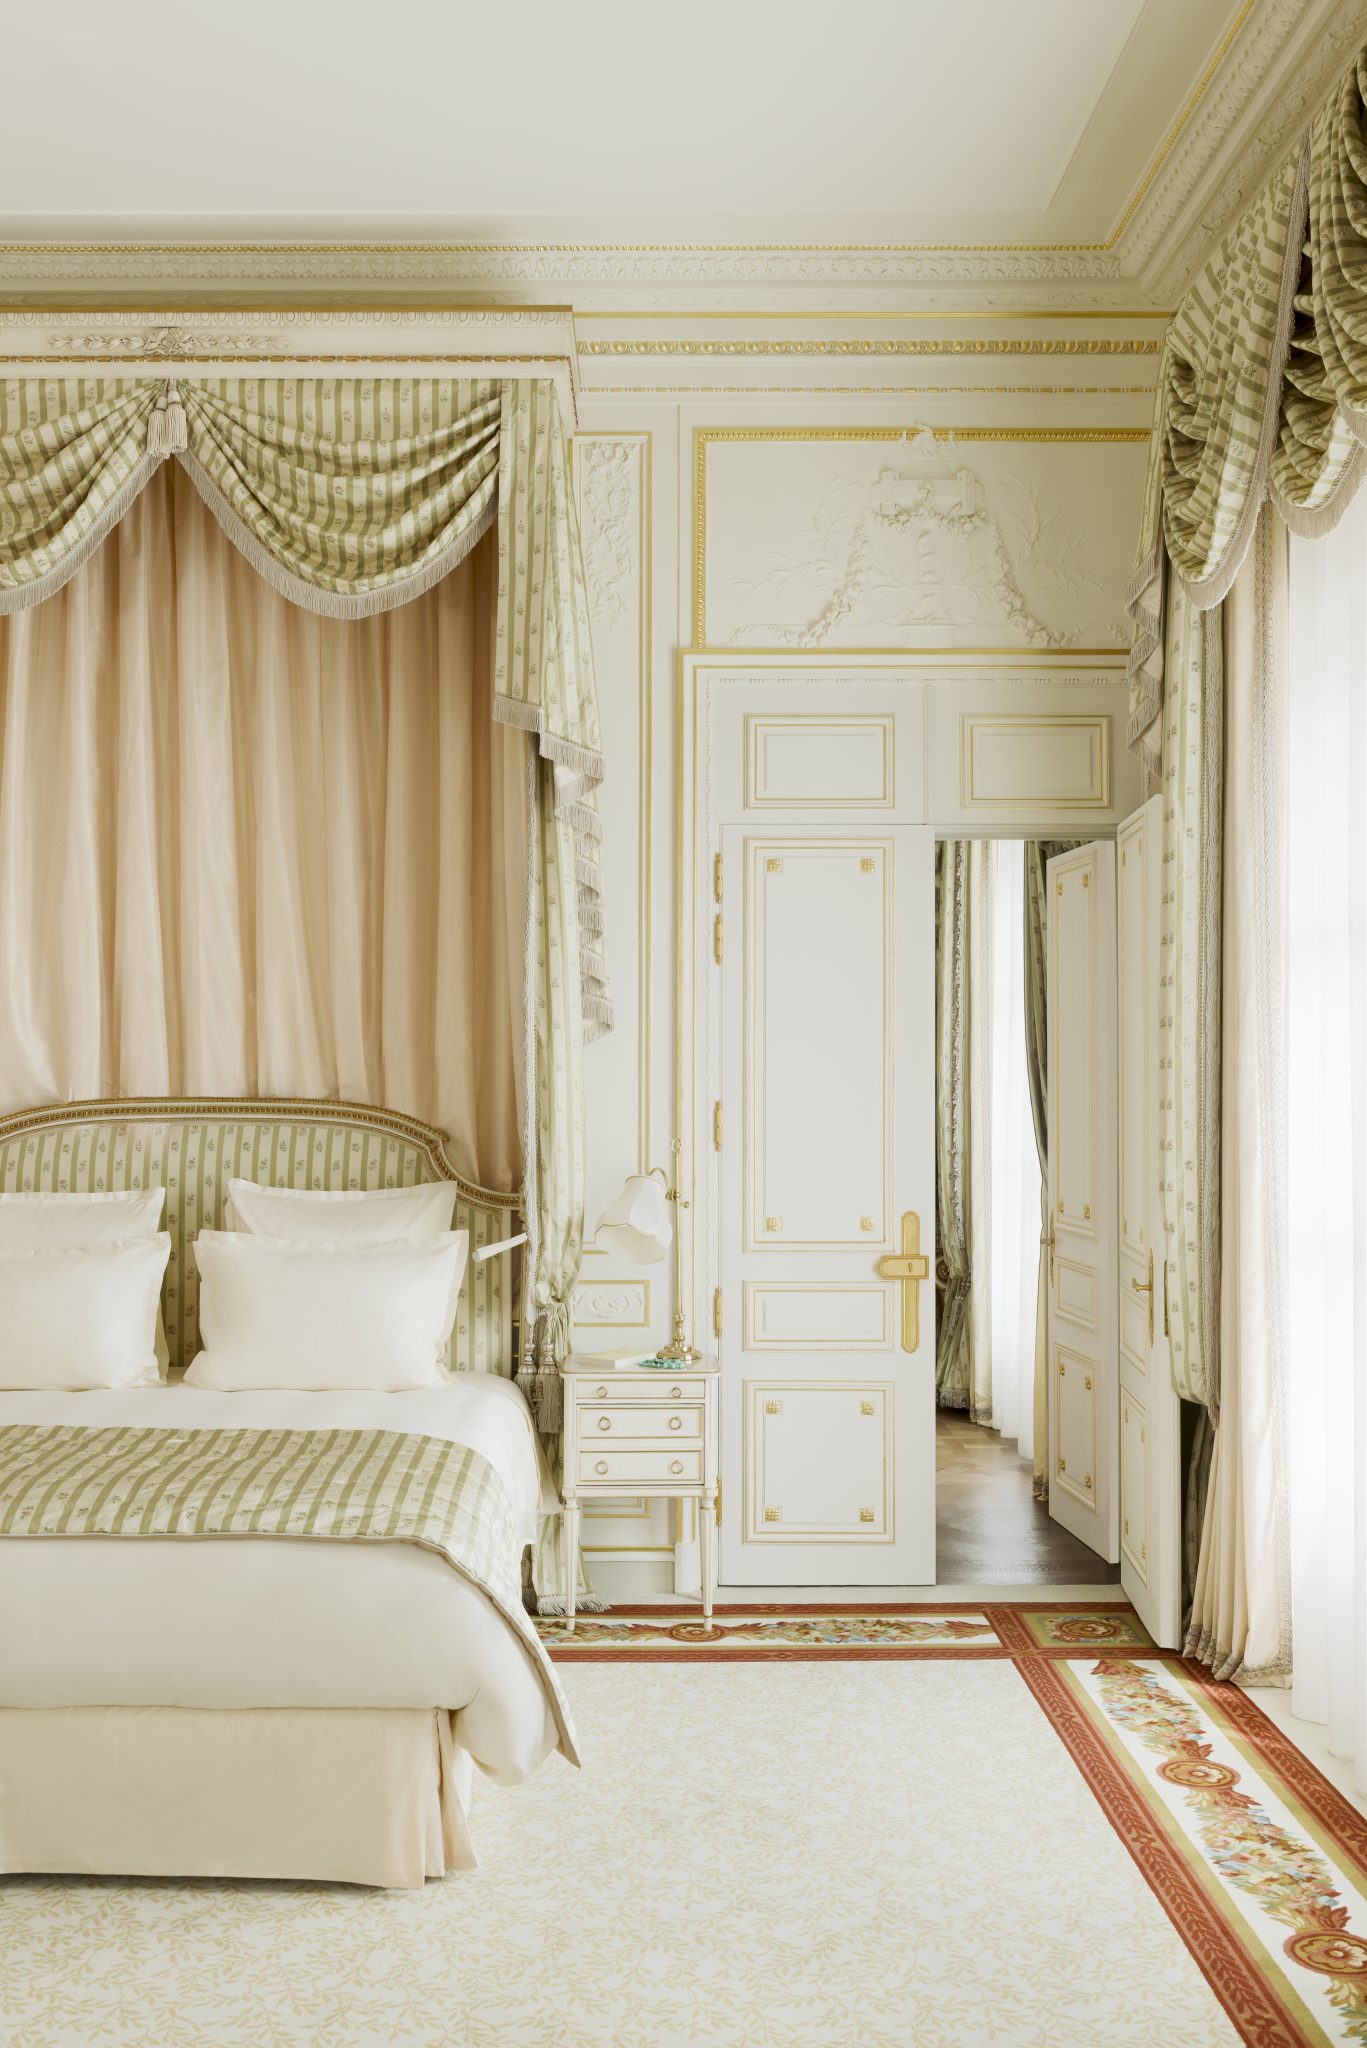 The Suite Vendôme. 